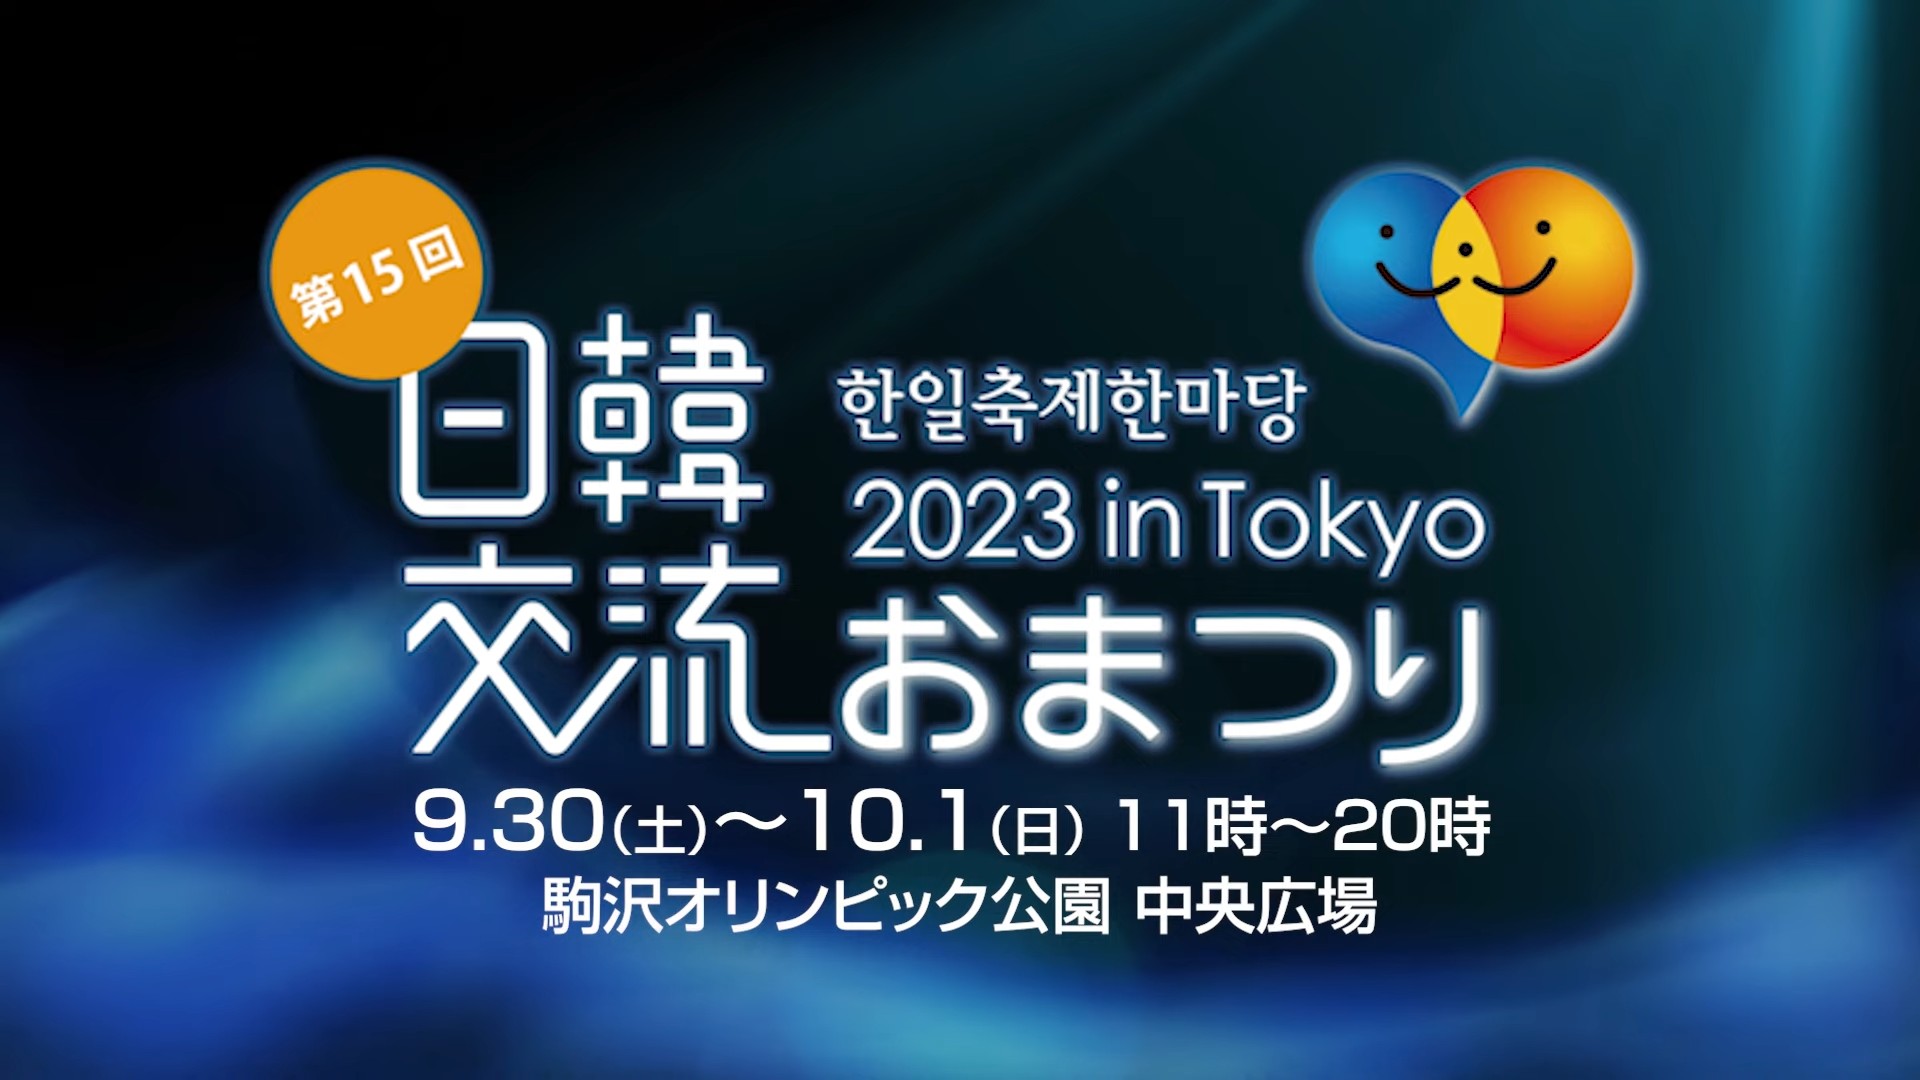 한일축제한마당 2023 in Tokyo 홍보영상 